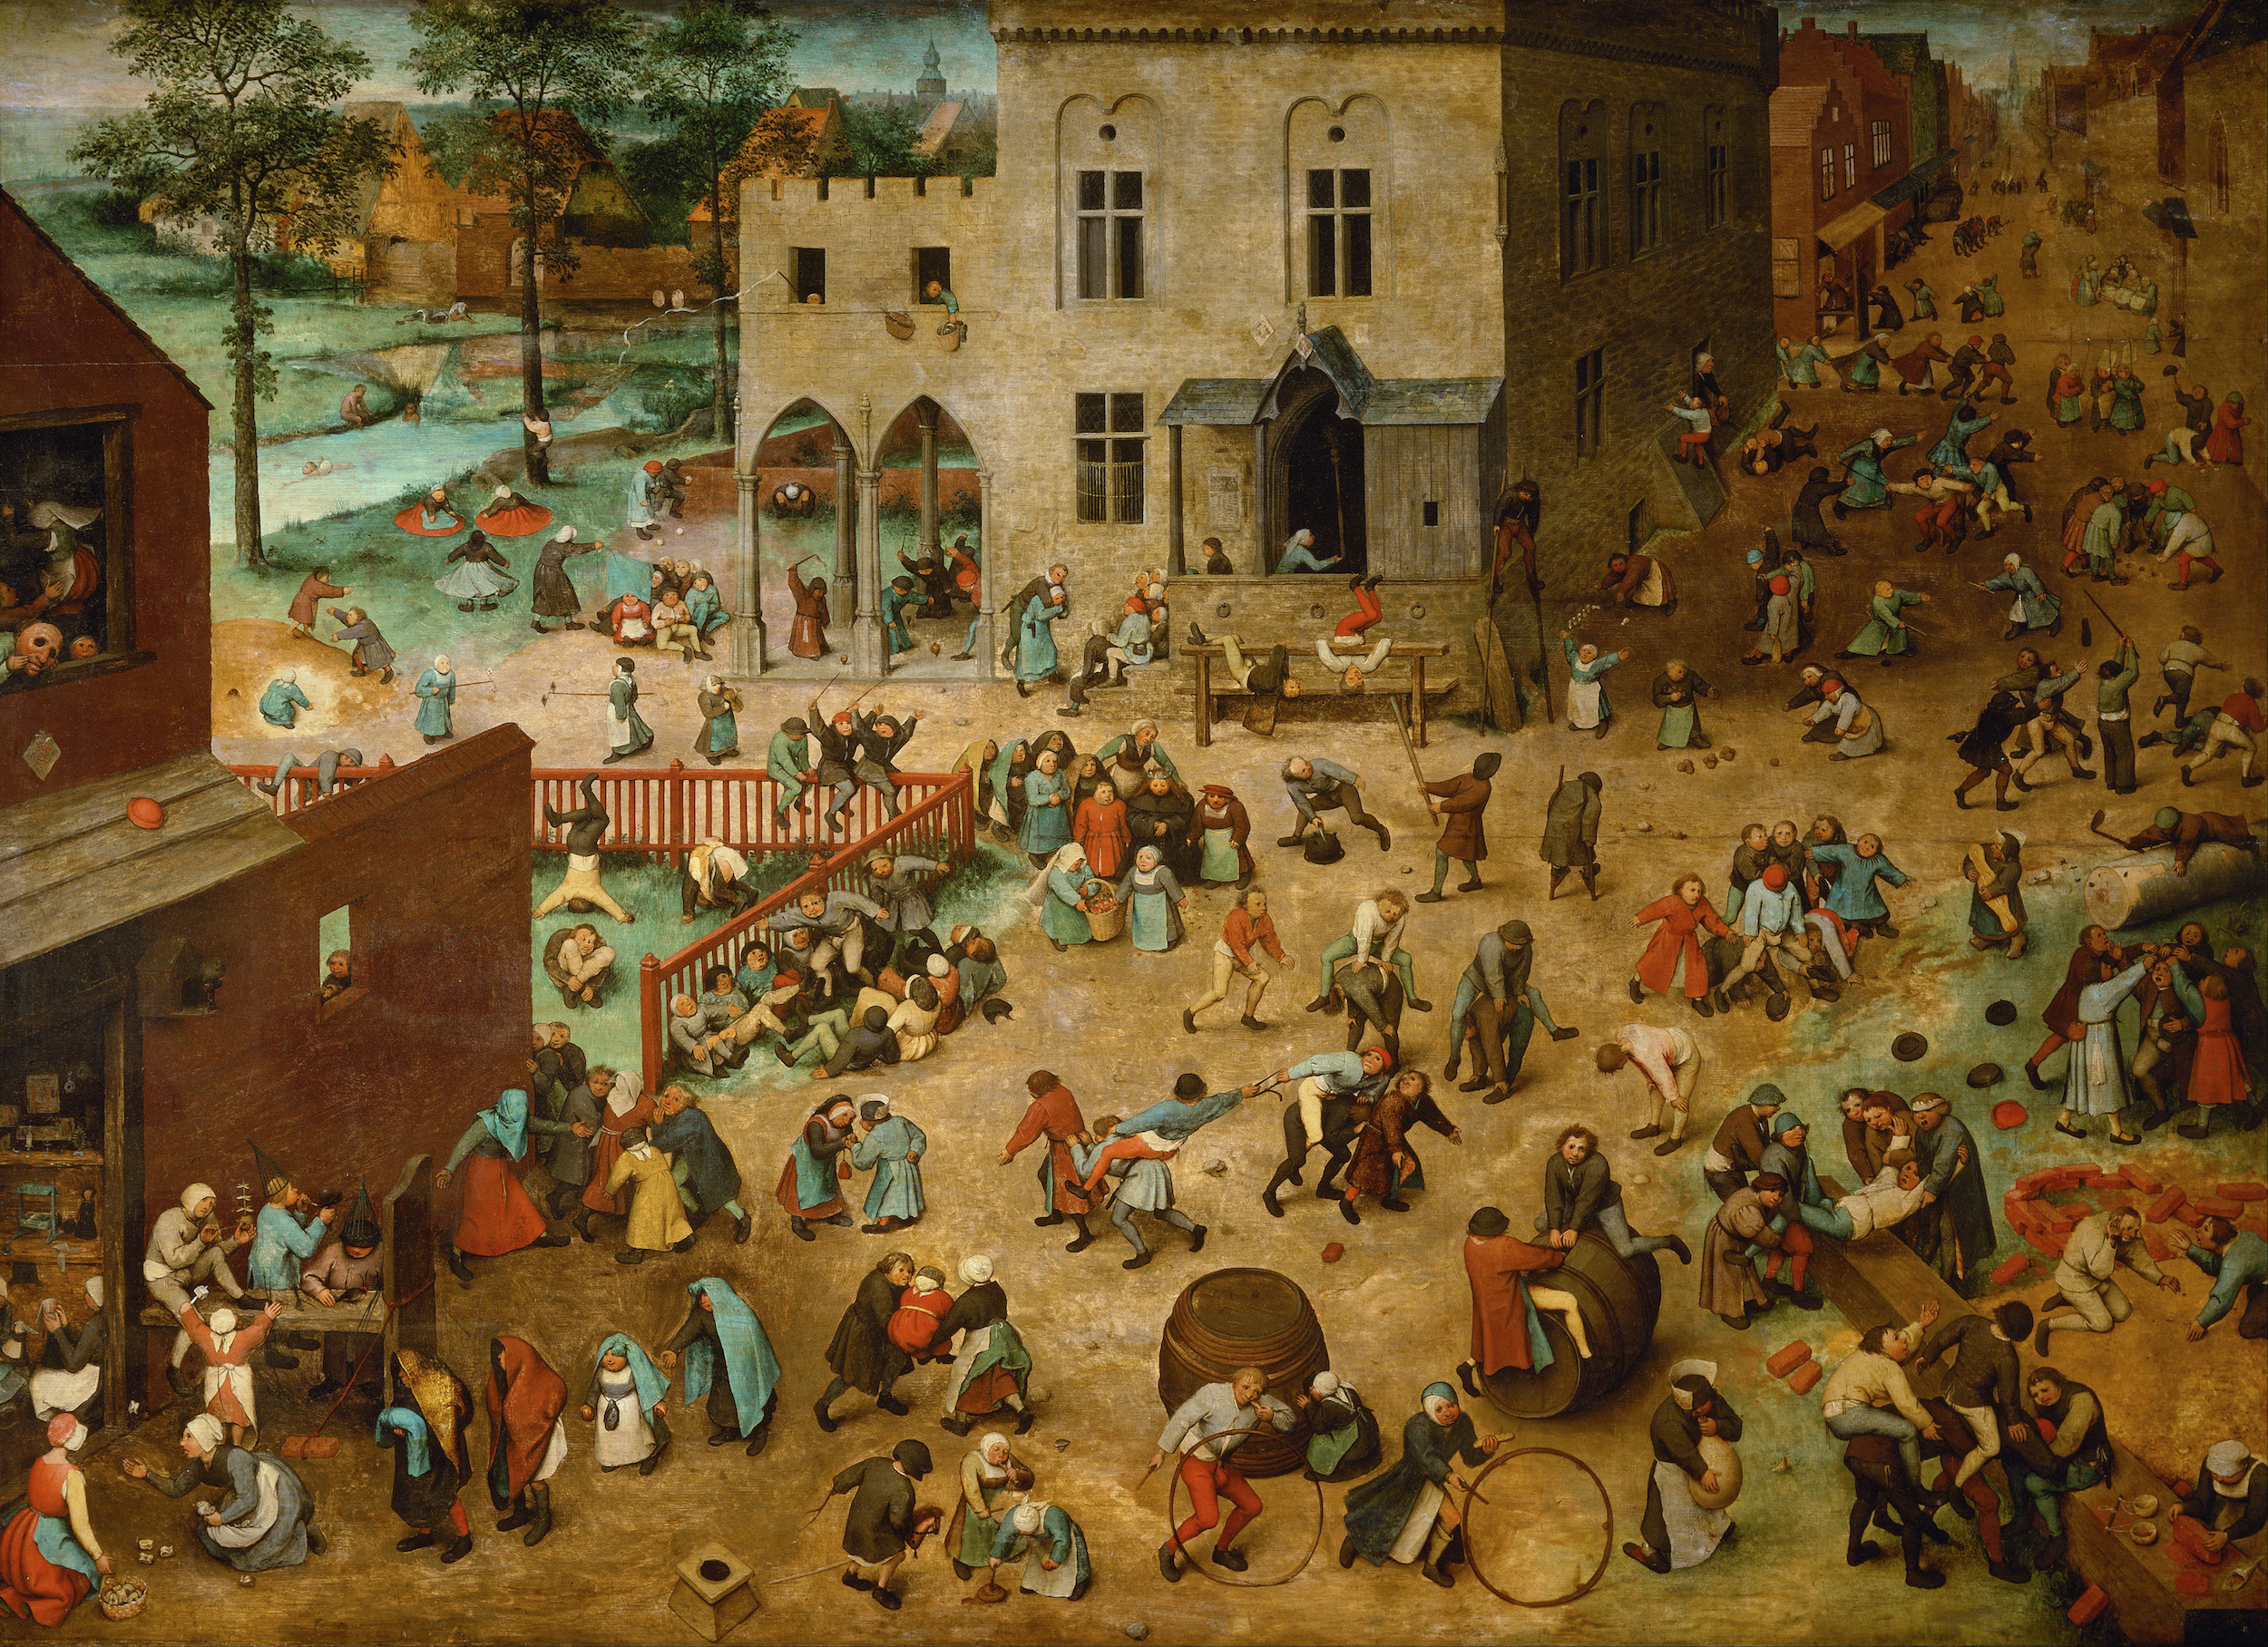 ألعاب الأطفال by Pieter Bruegel the Elder - 1560 - 118 x 161 cm 